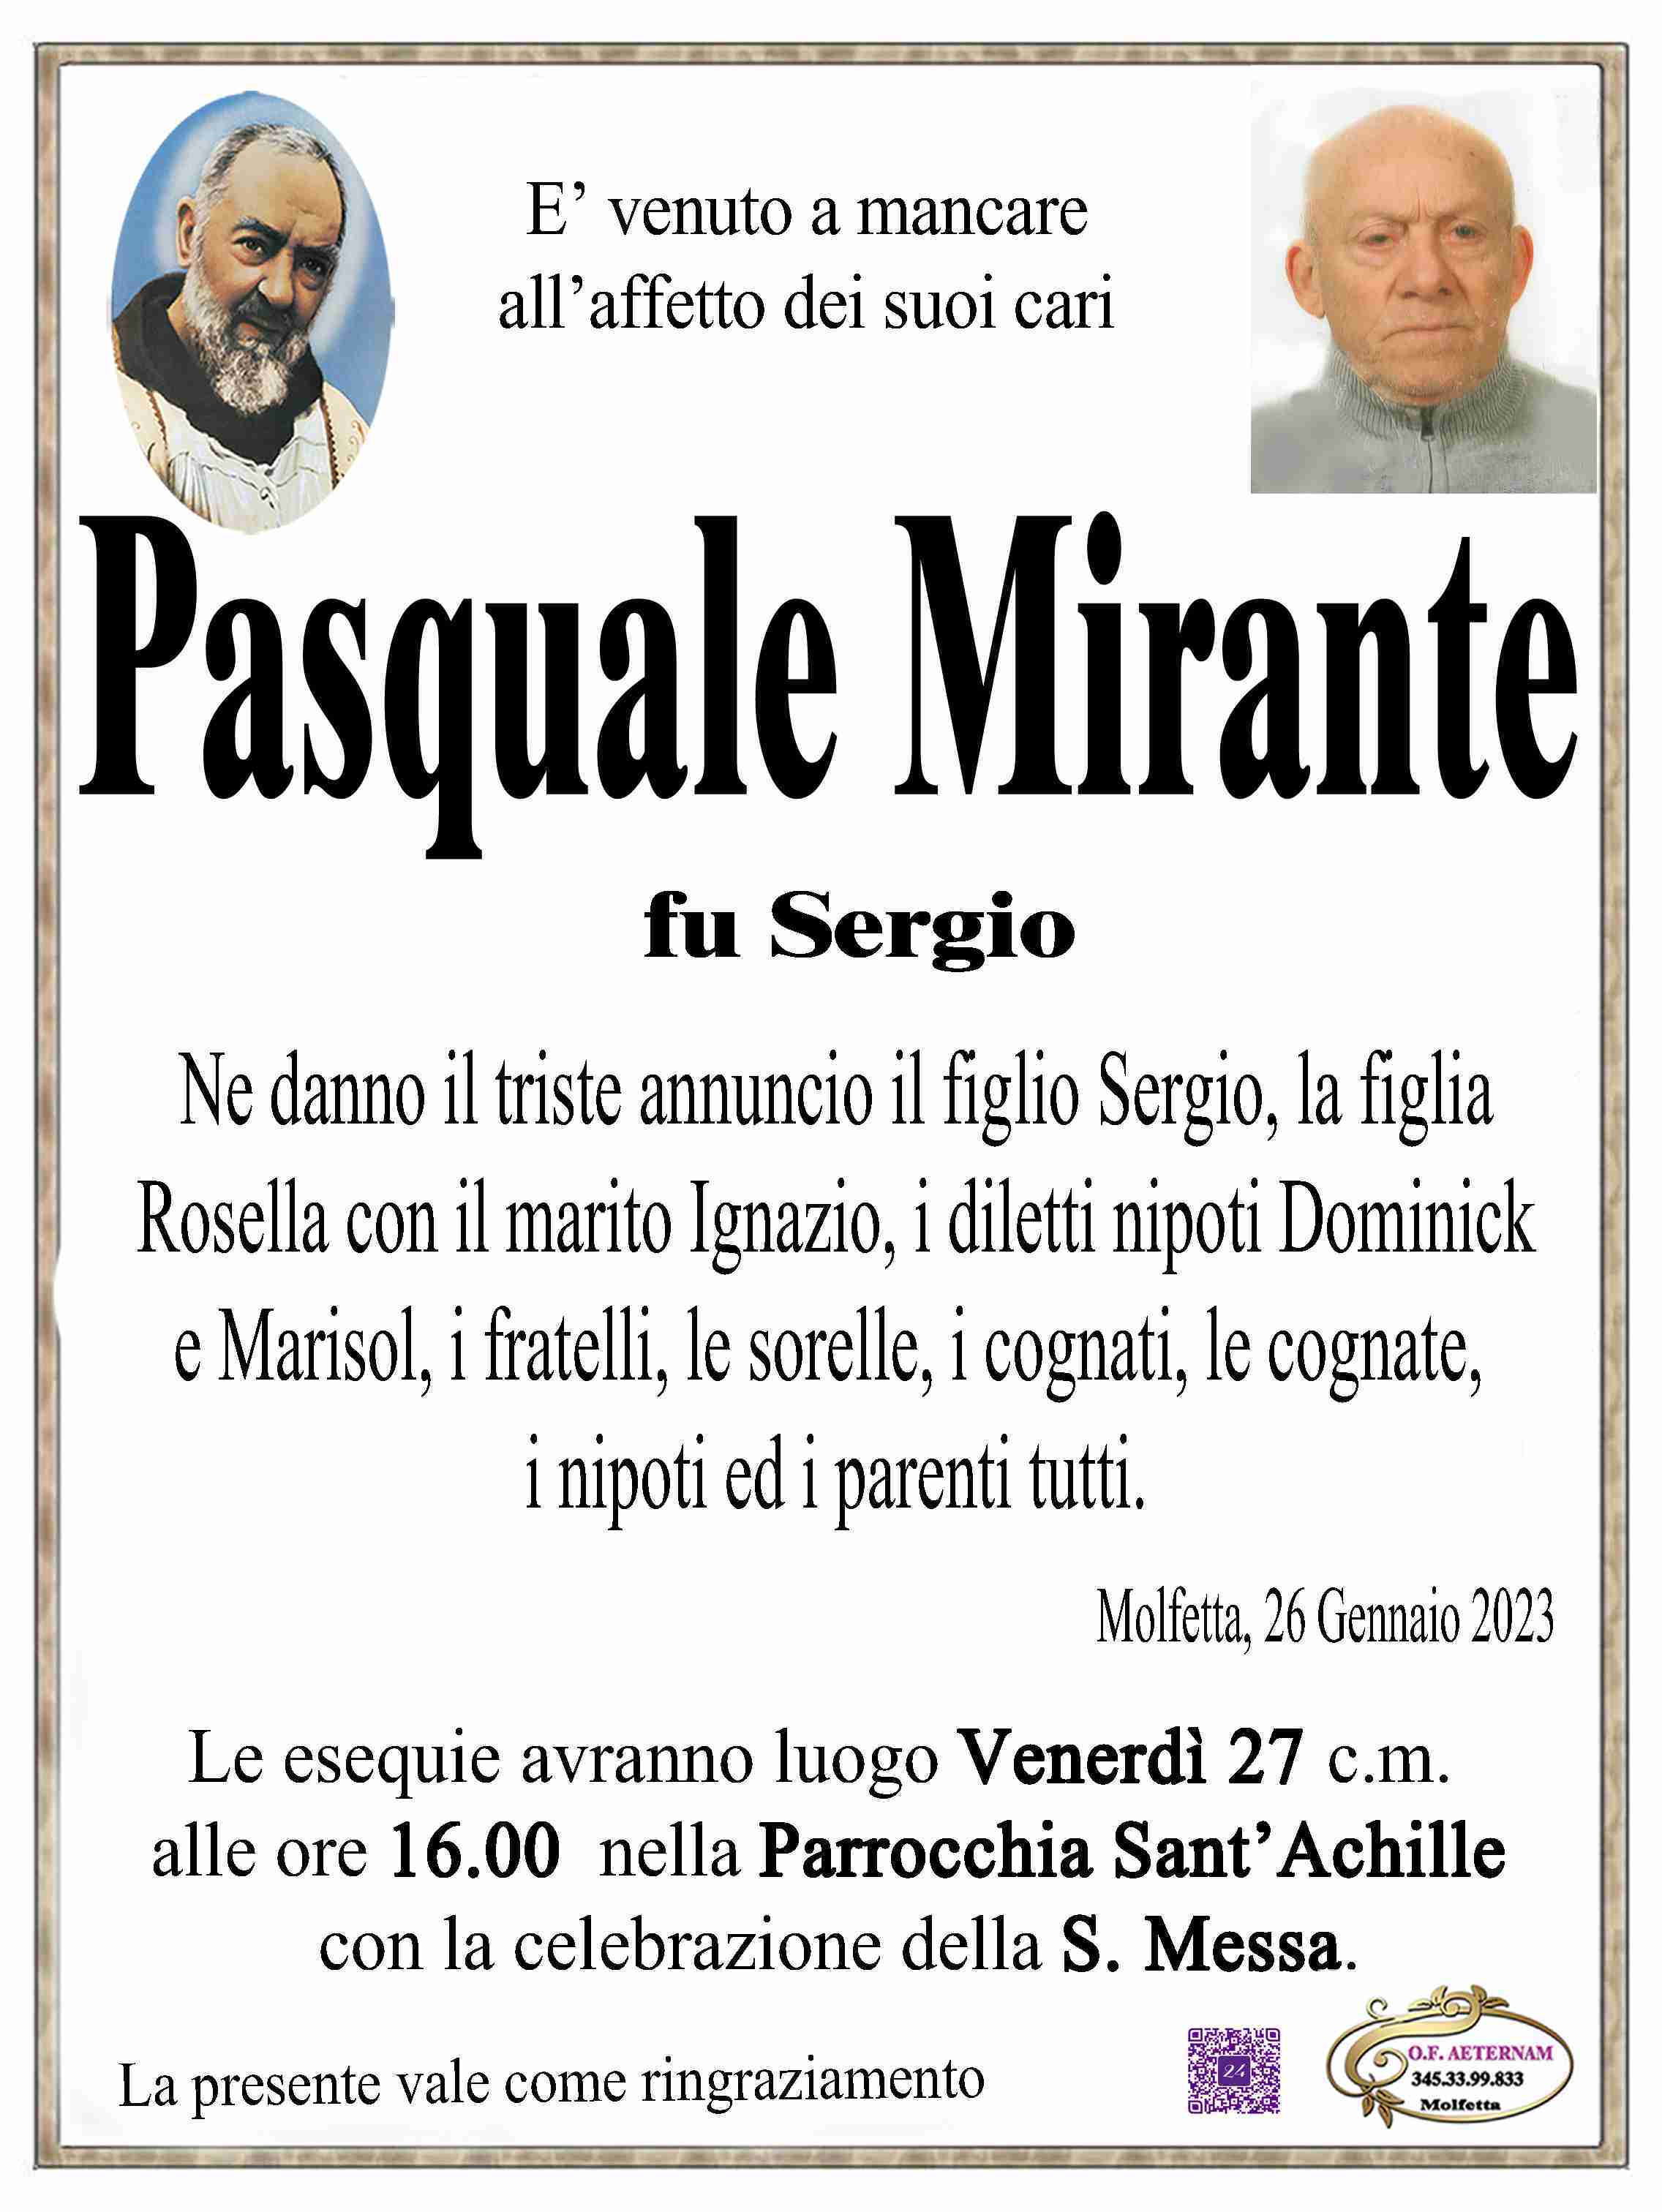 Pasquale Mirante